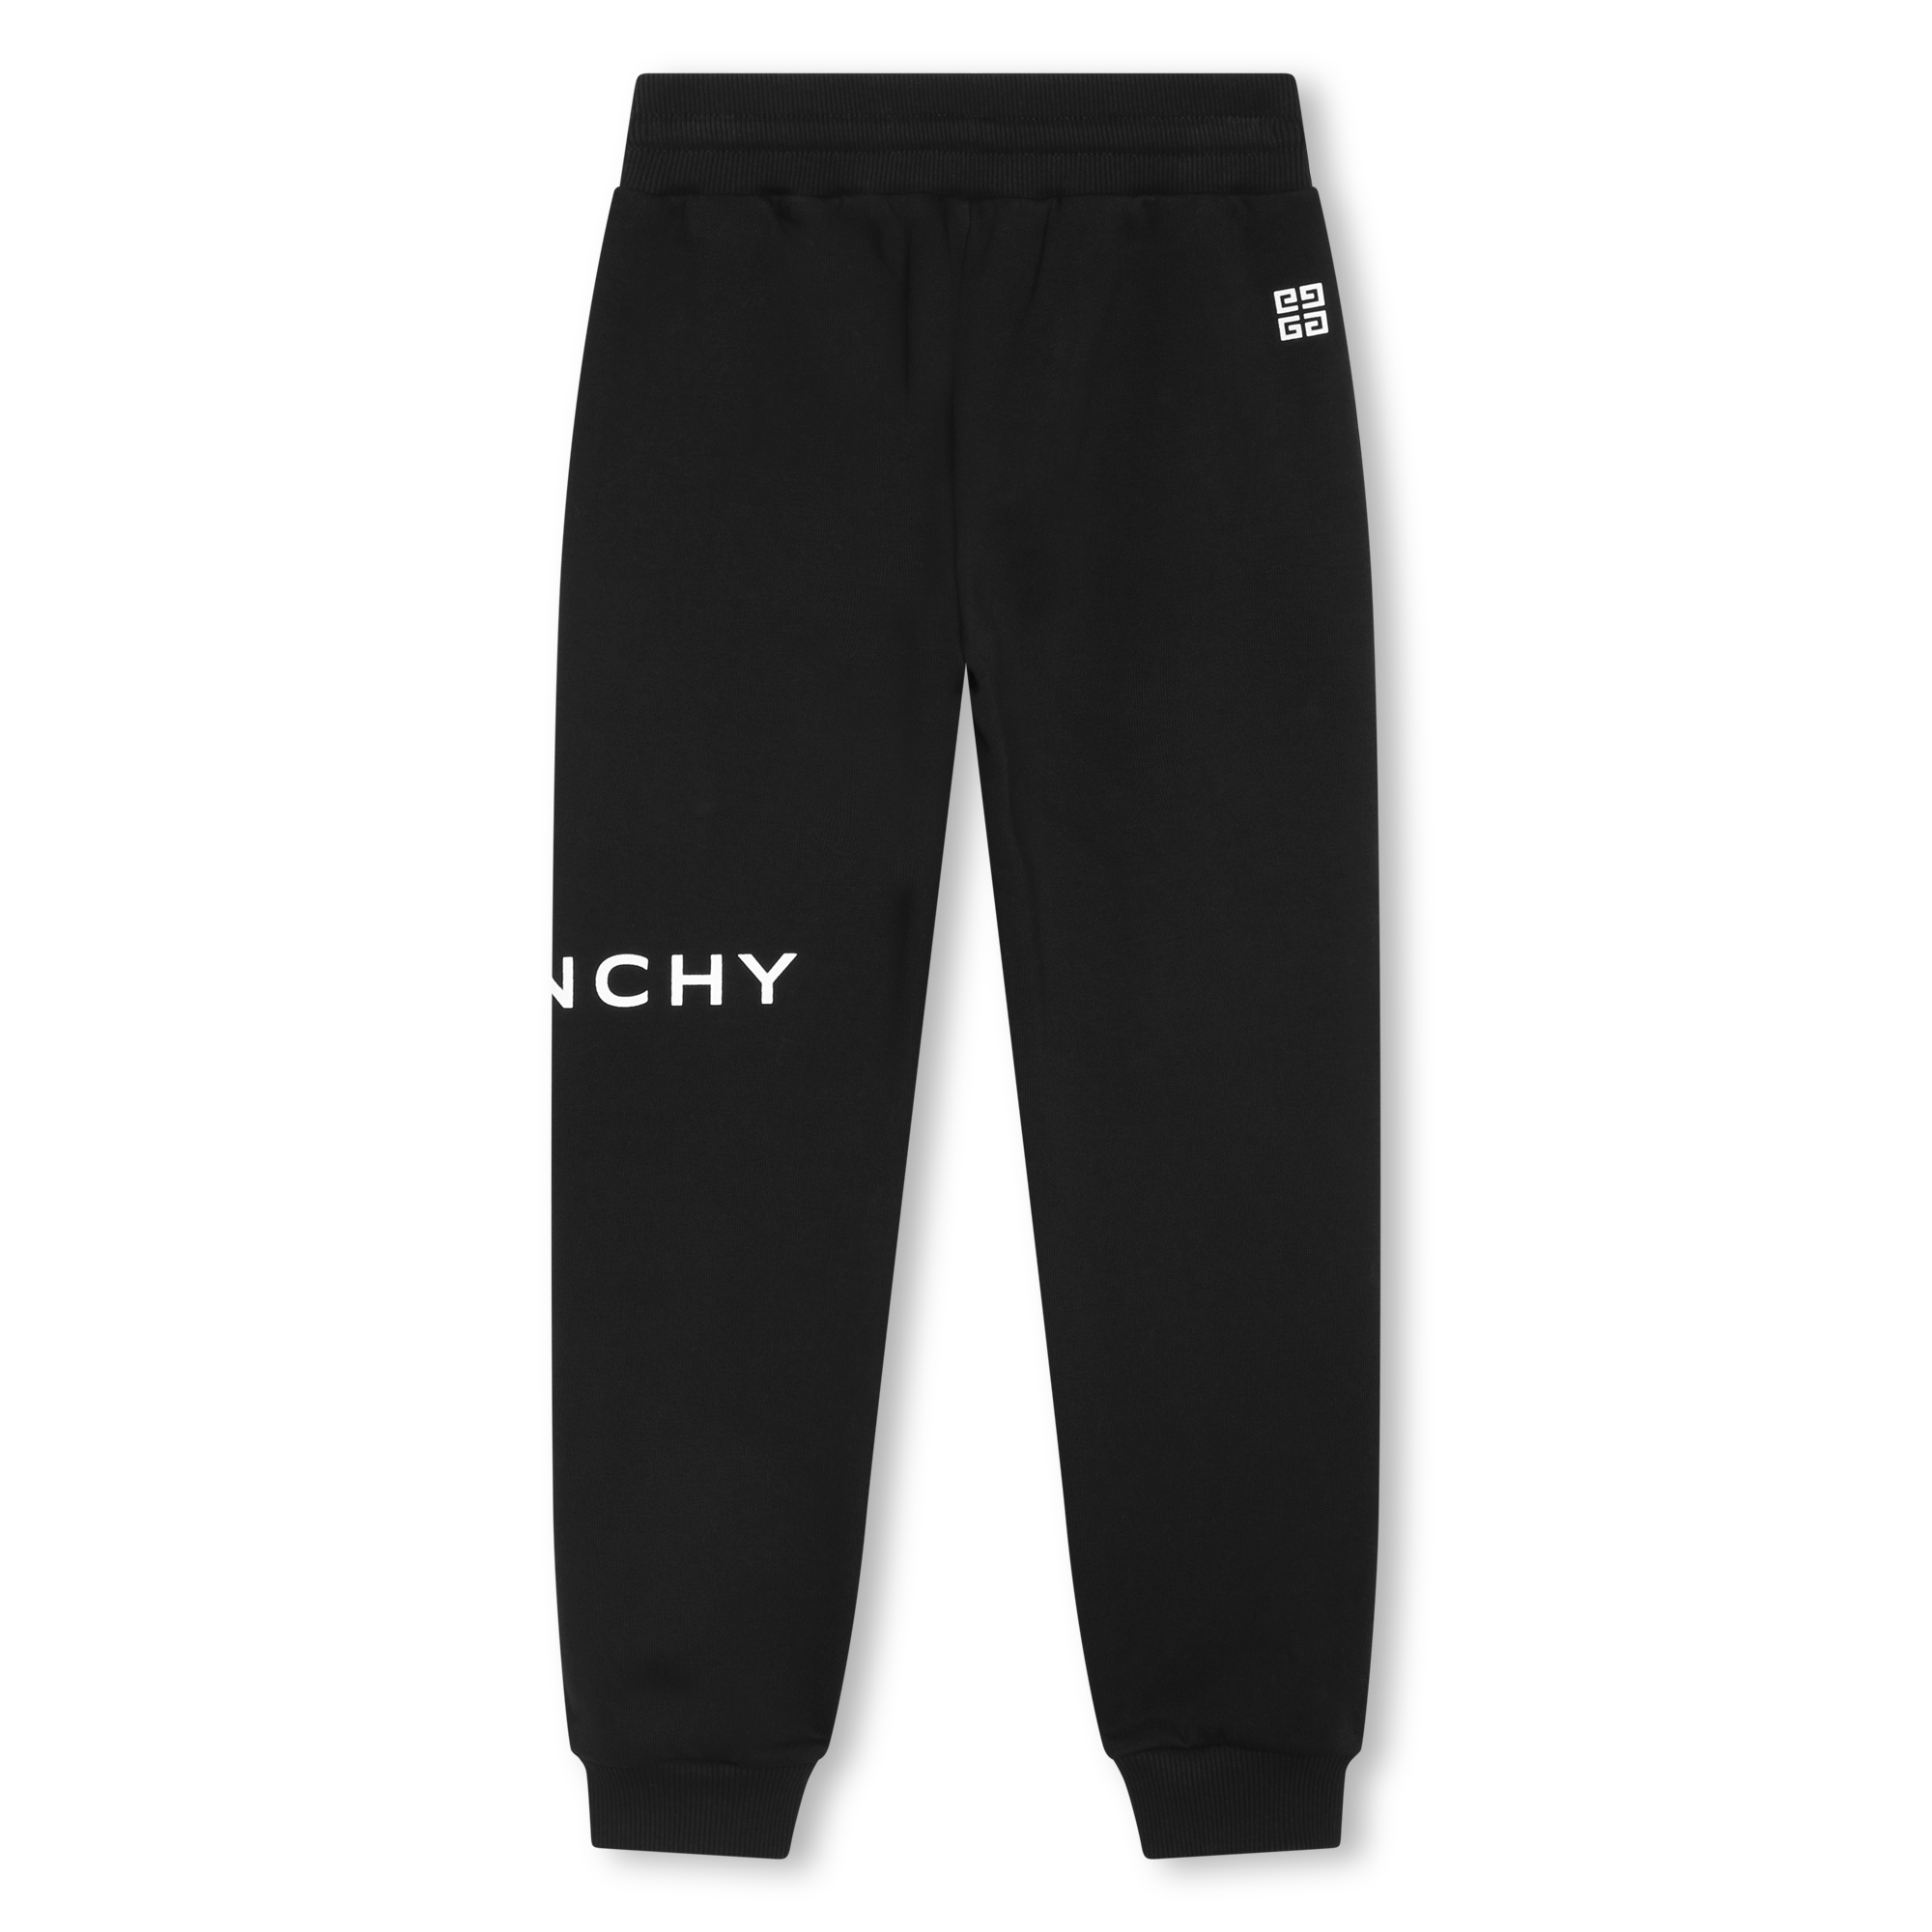 Pantalon de jogging avec logo GIVENCHY pour FILLE